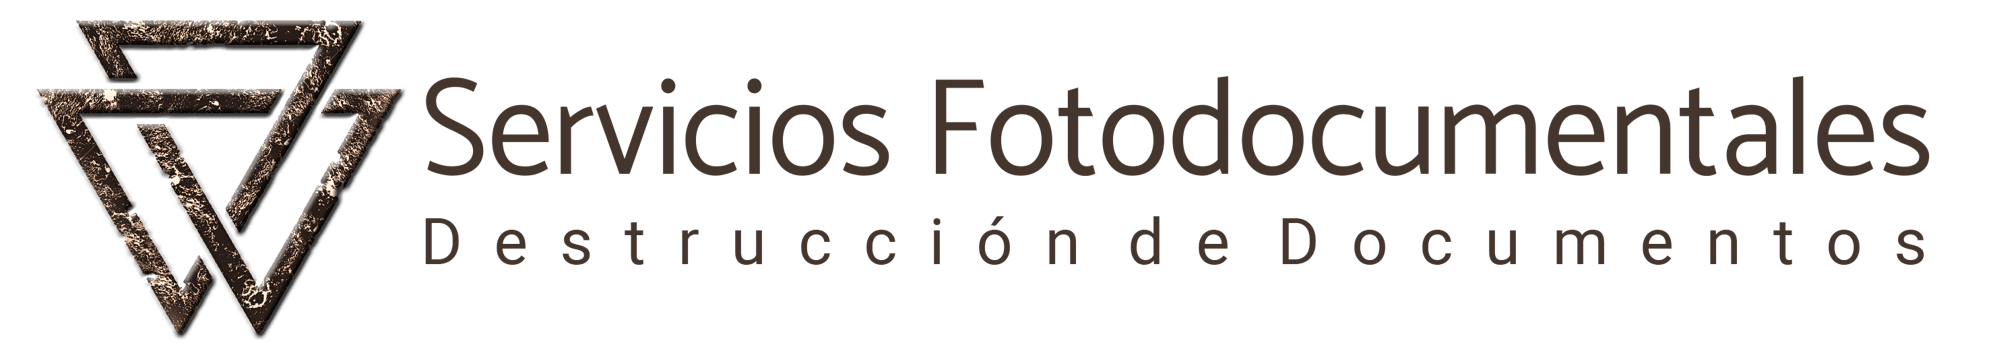 Destrucción de Documentos en Lugo - SERVIFOTODOC - logo-servifotodoc-copia1.png